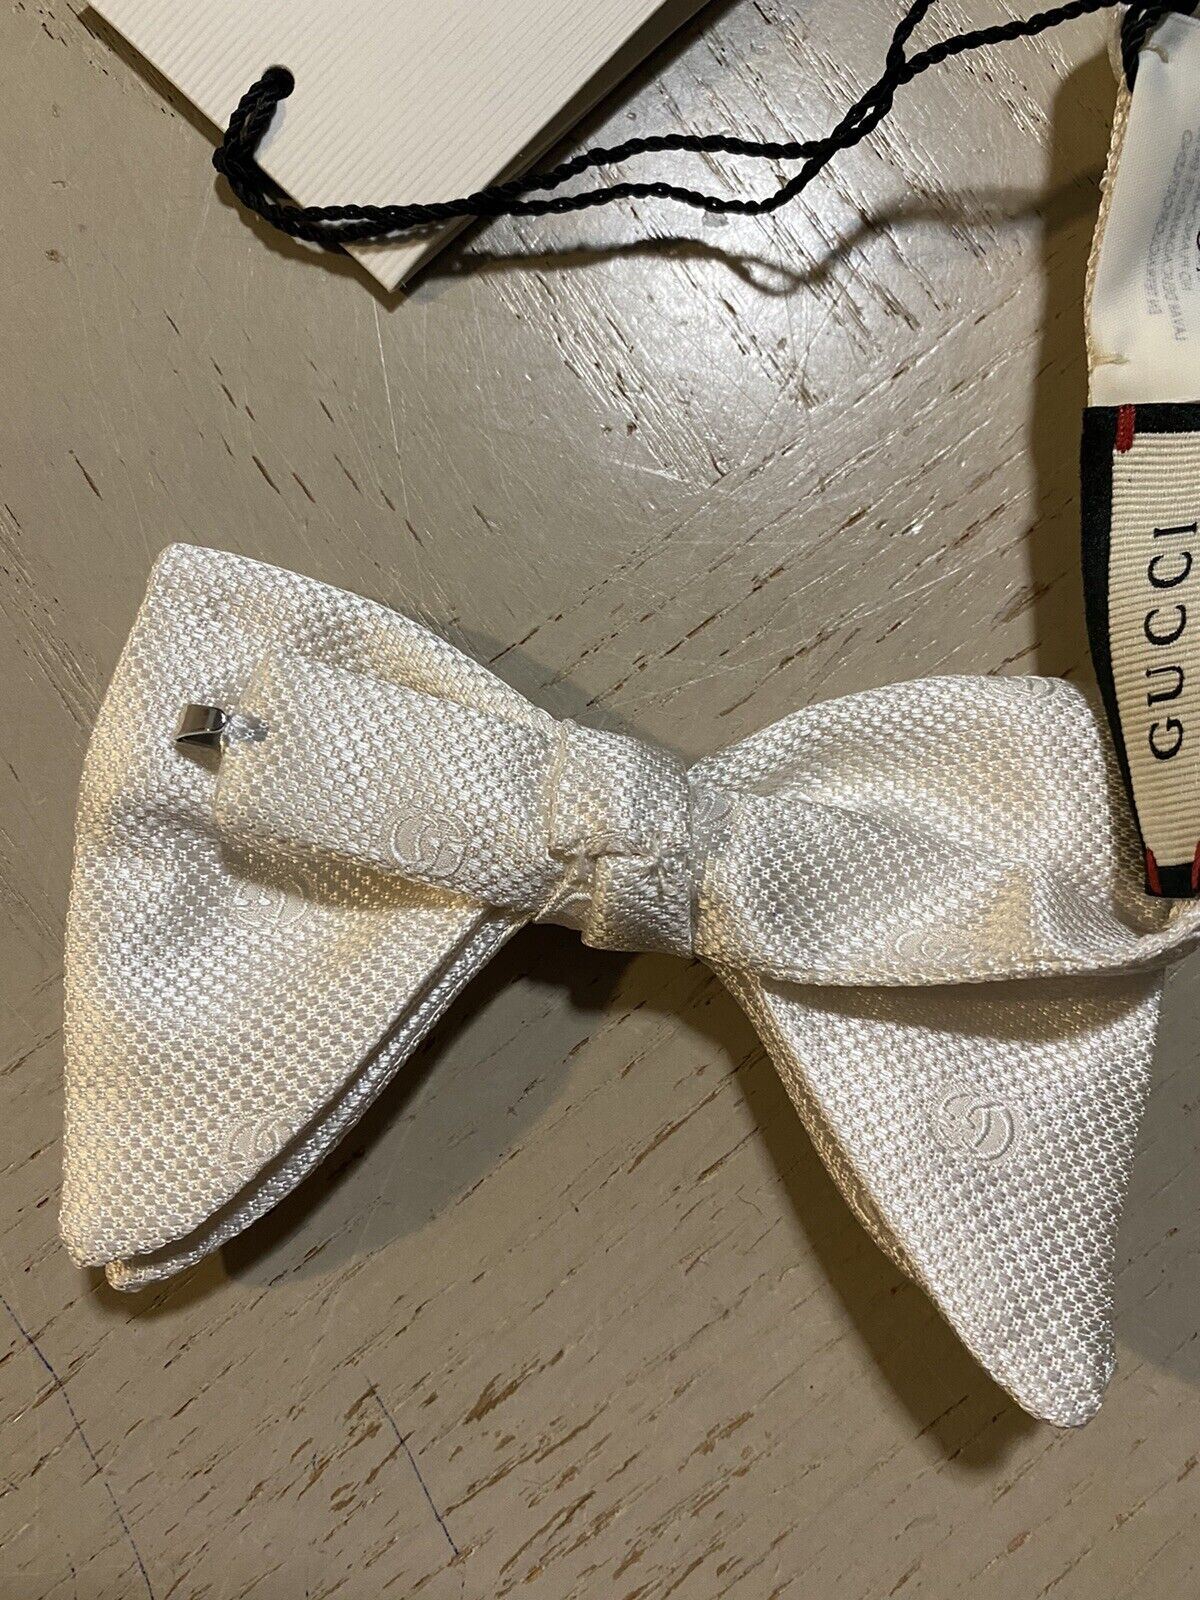 Новый шелковый галстук-бабочка Gucci с монограммой GG, сделанный в Италии